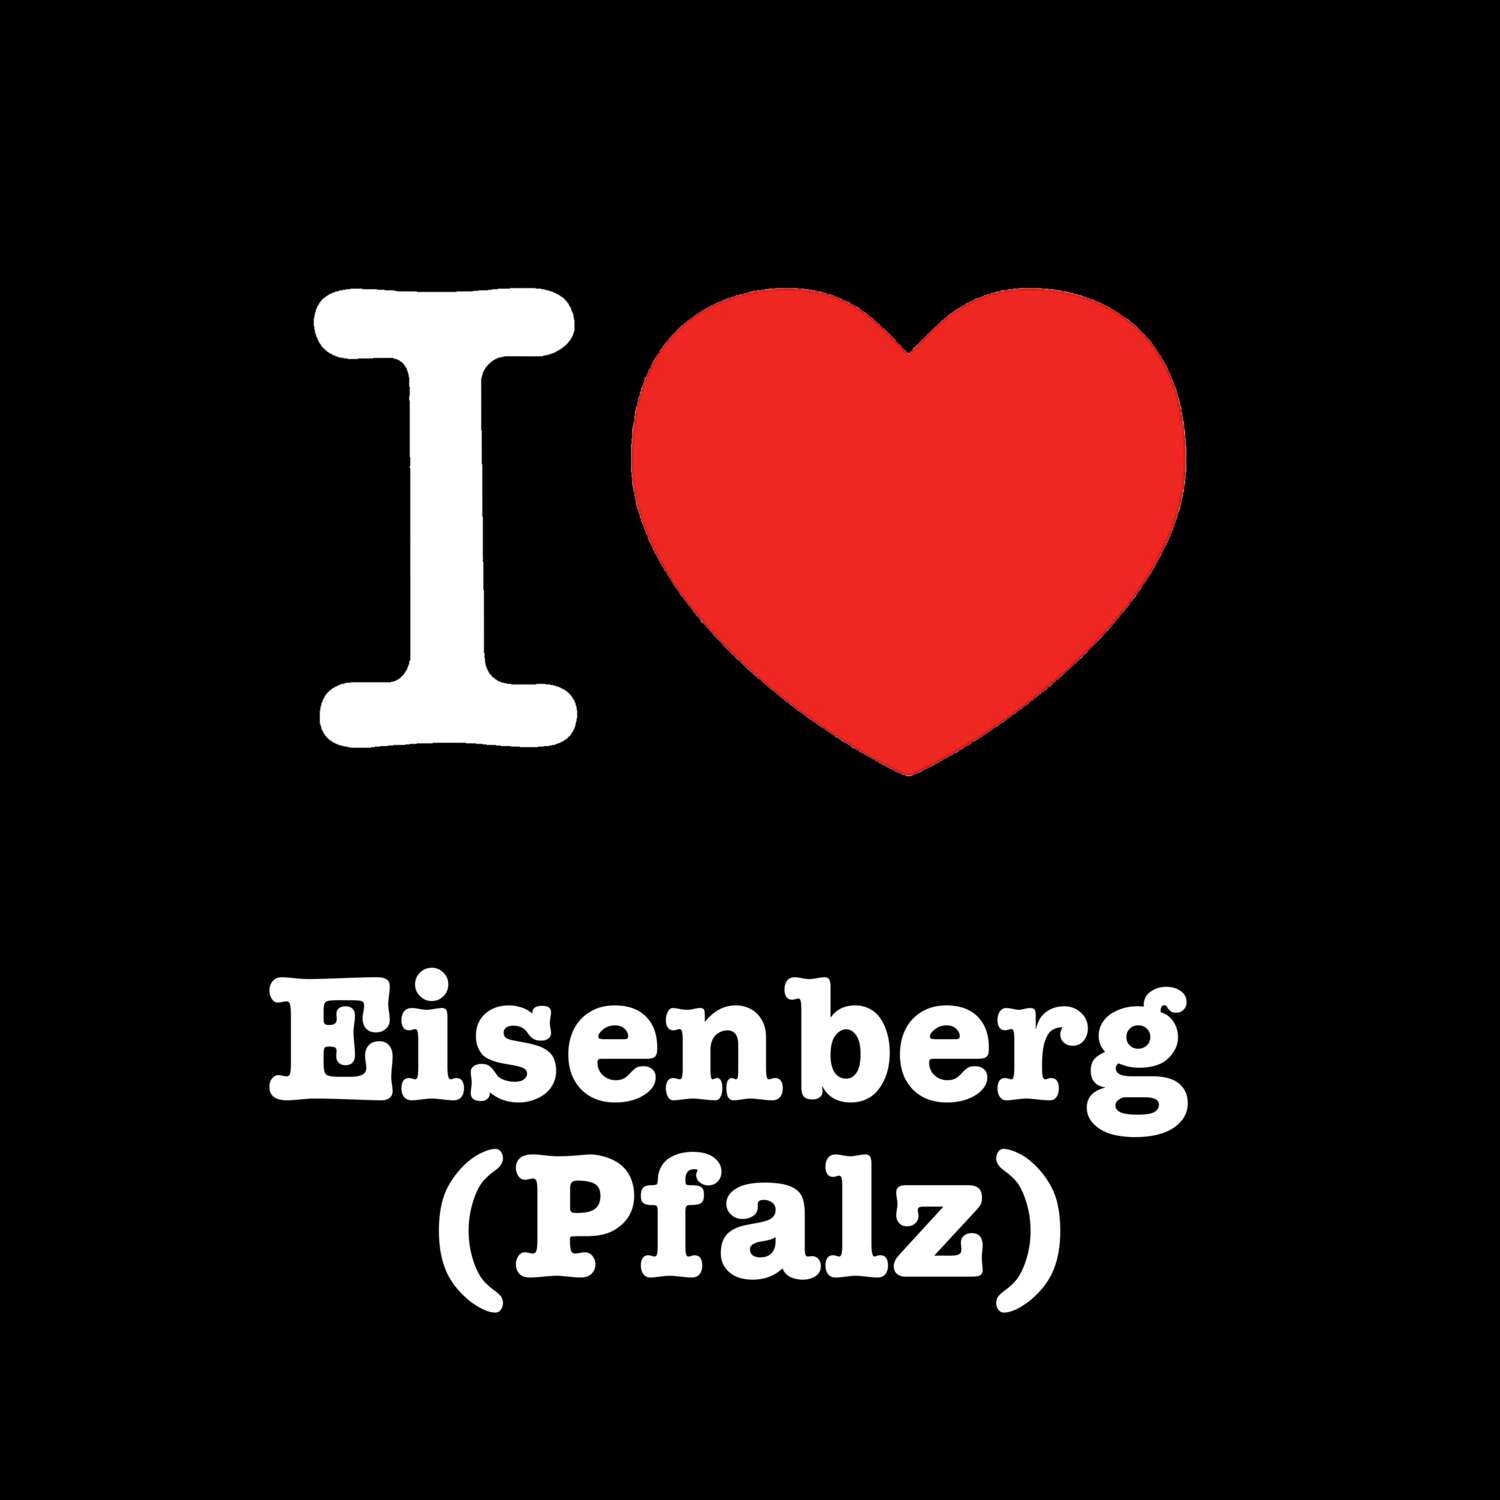 Eisenberg (Pfalz) T-Shirt »I love«